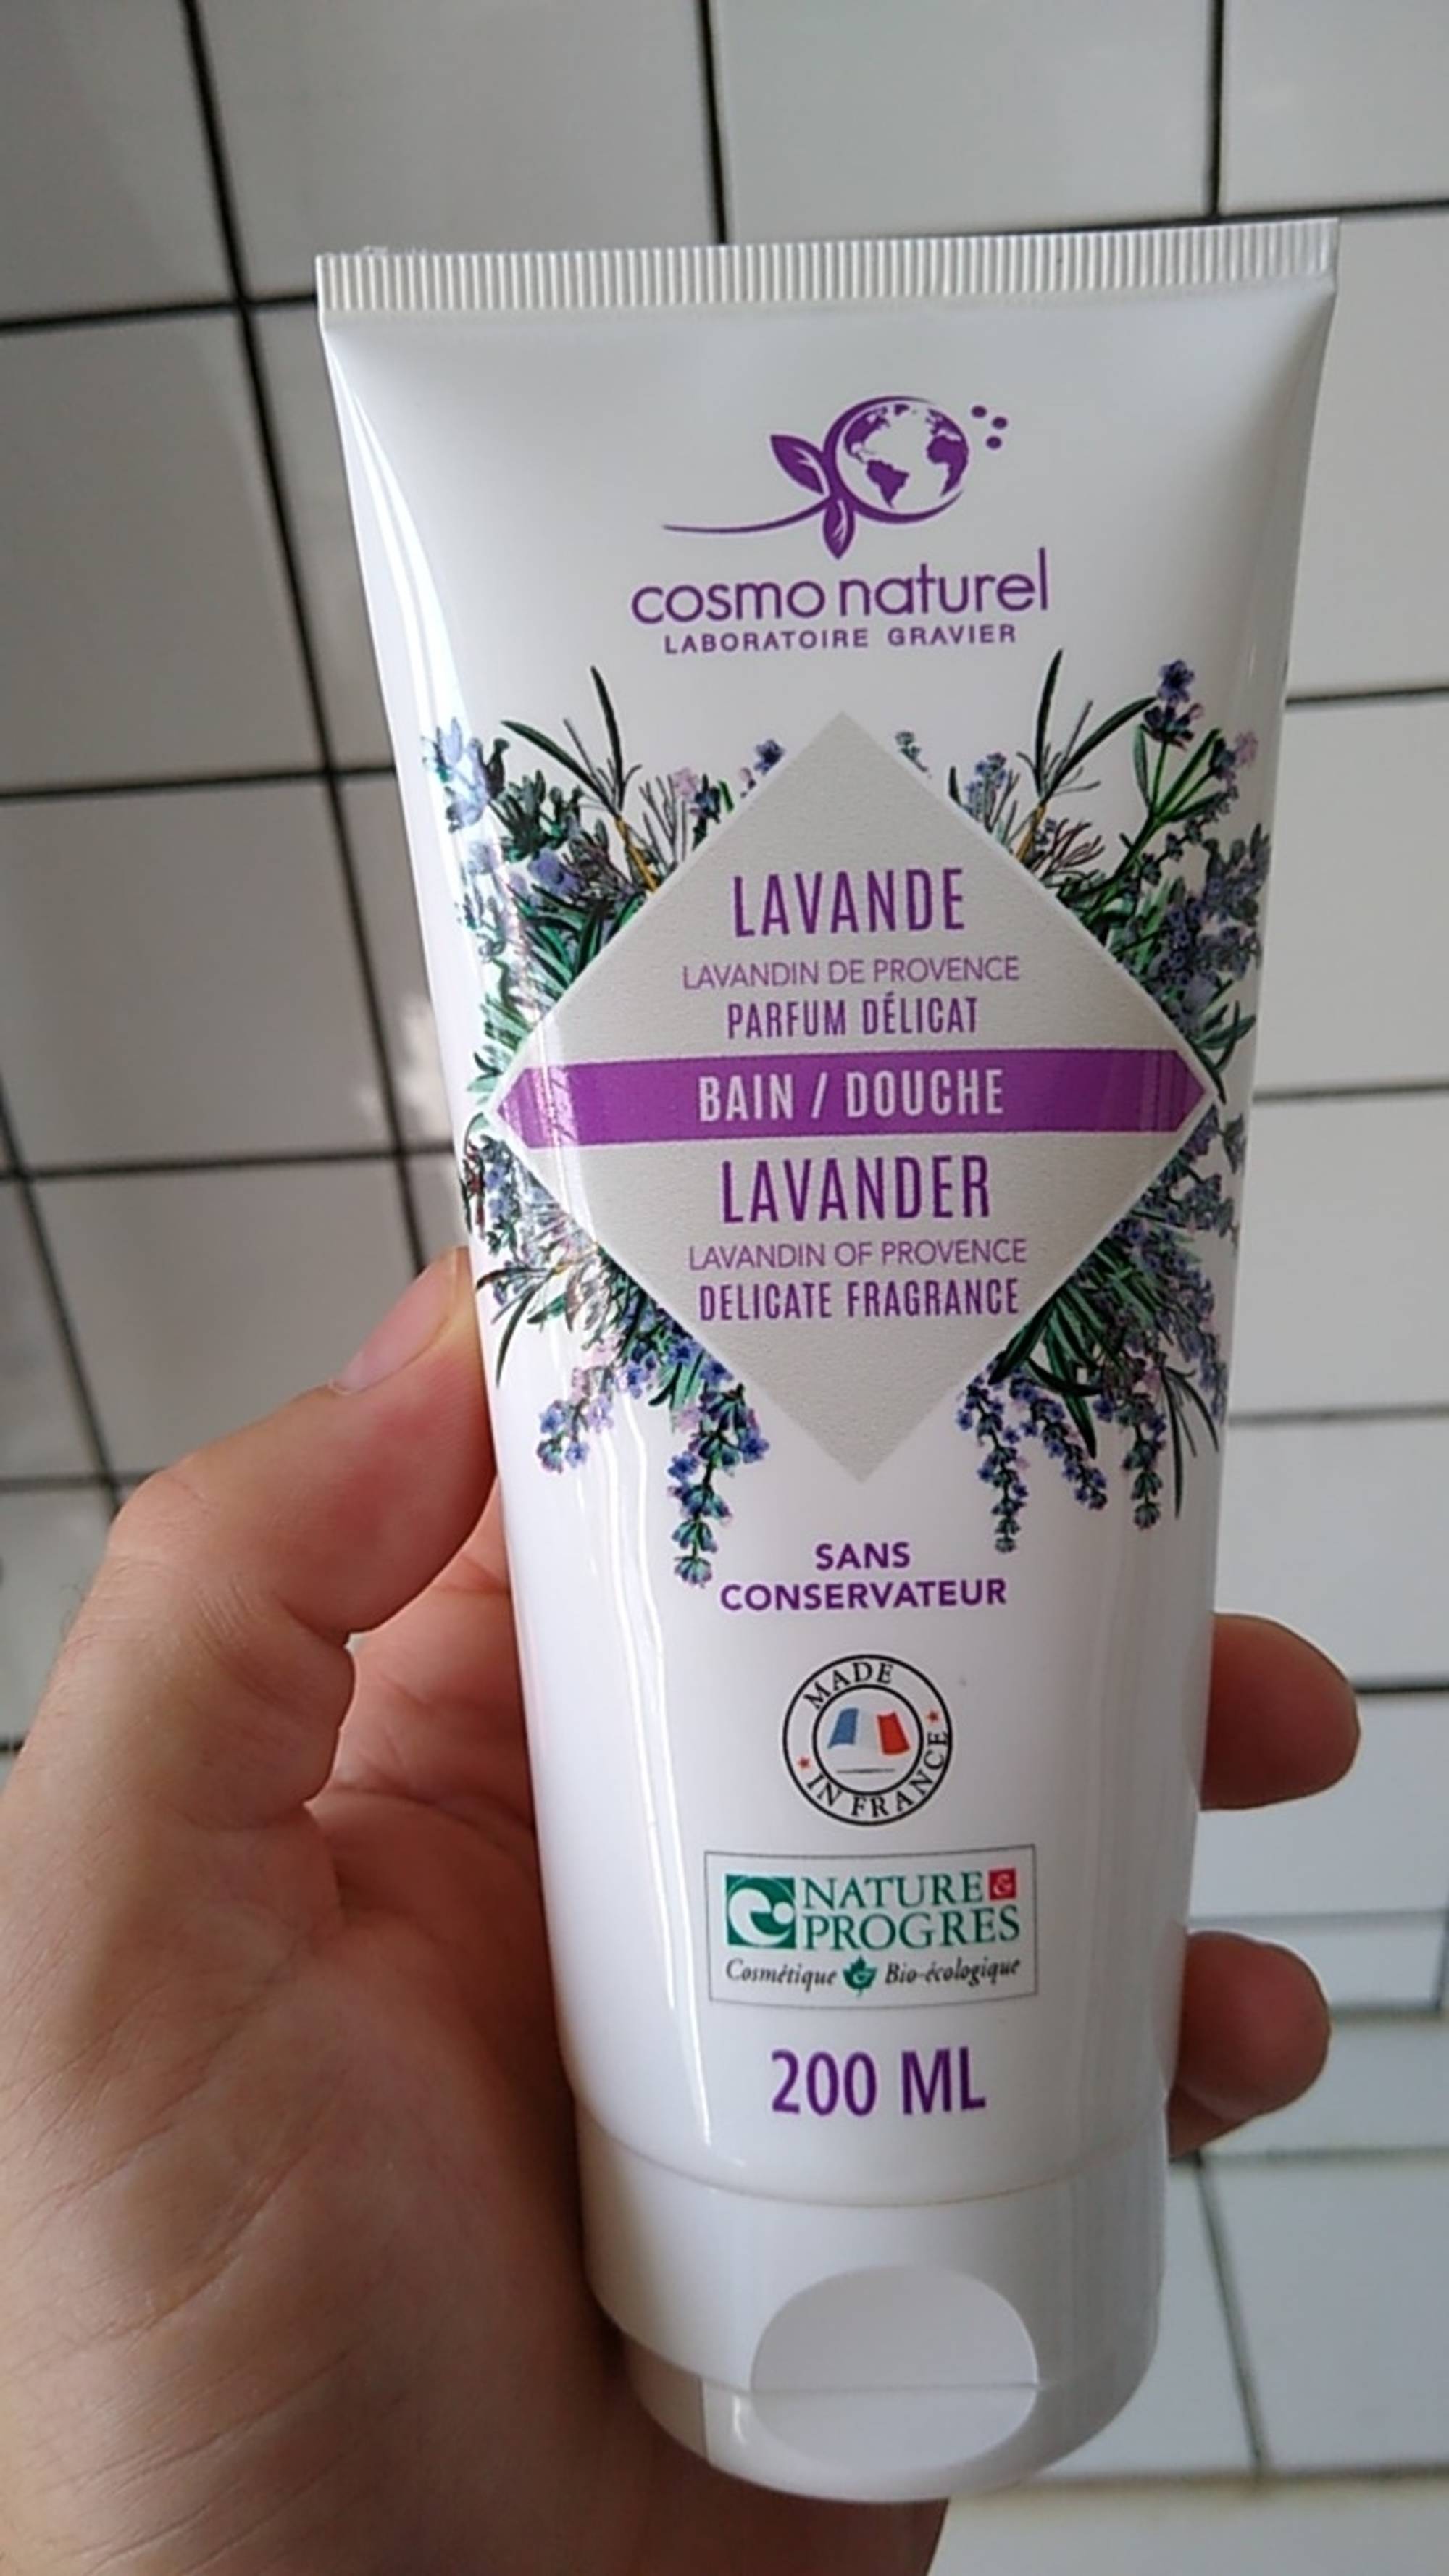 COSMO NATUREL - Lavande - Bain / douche parfum délicat